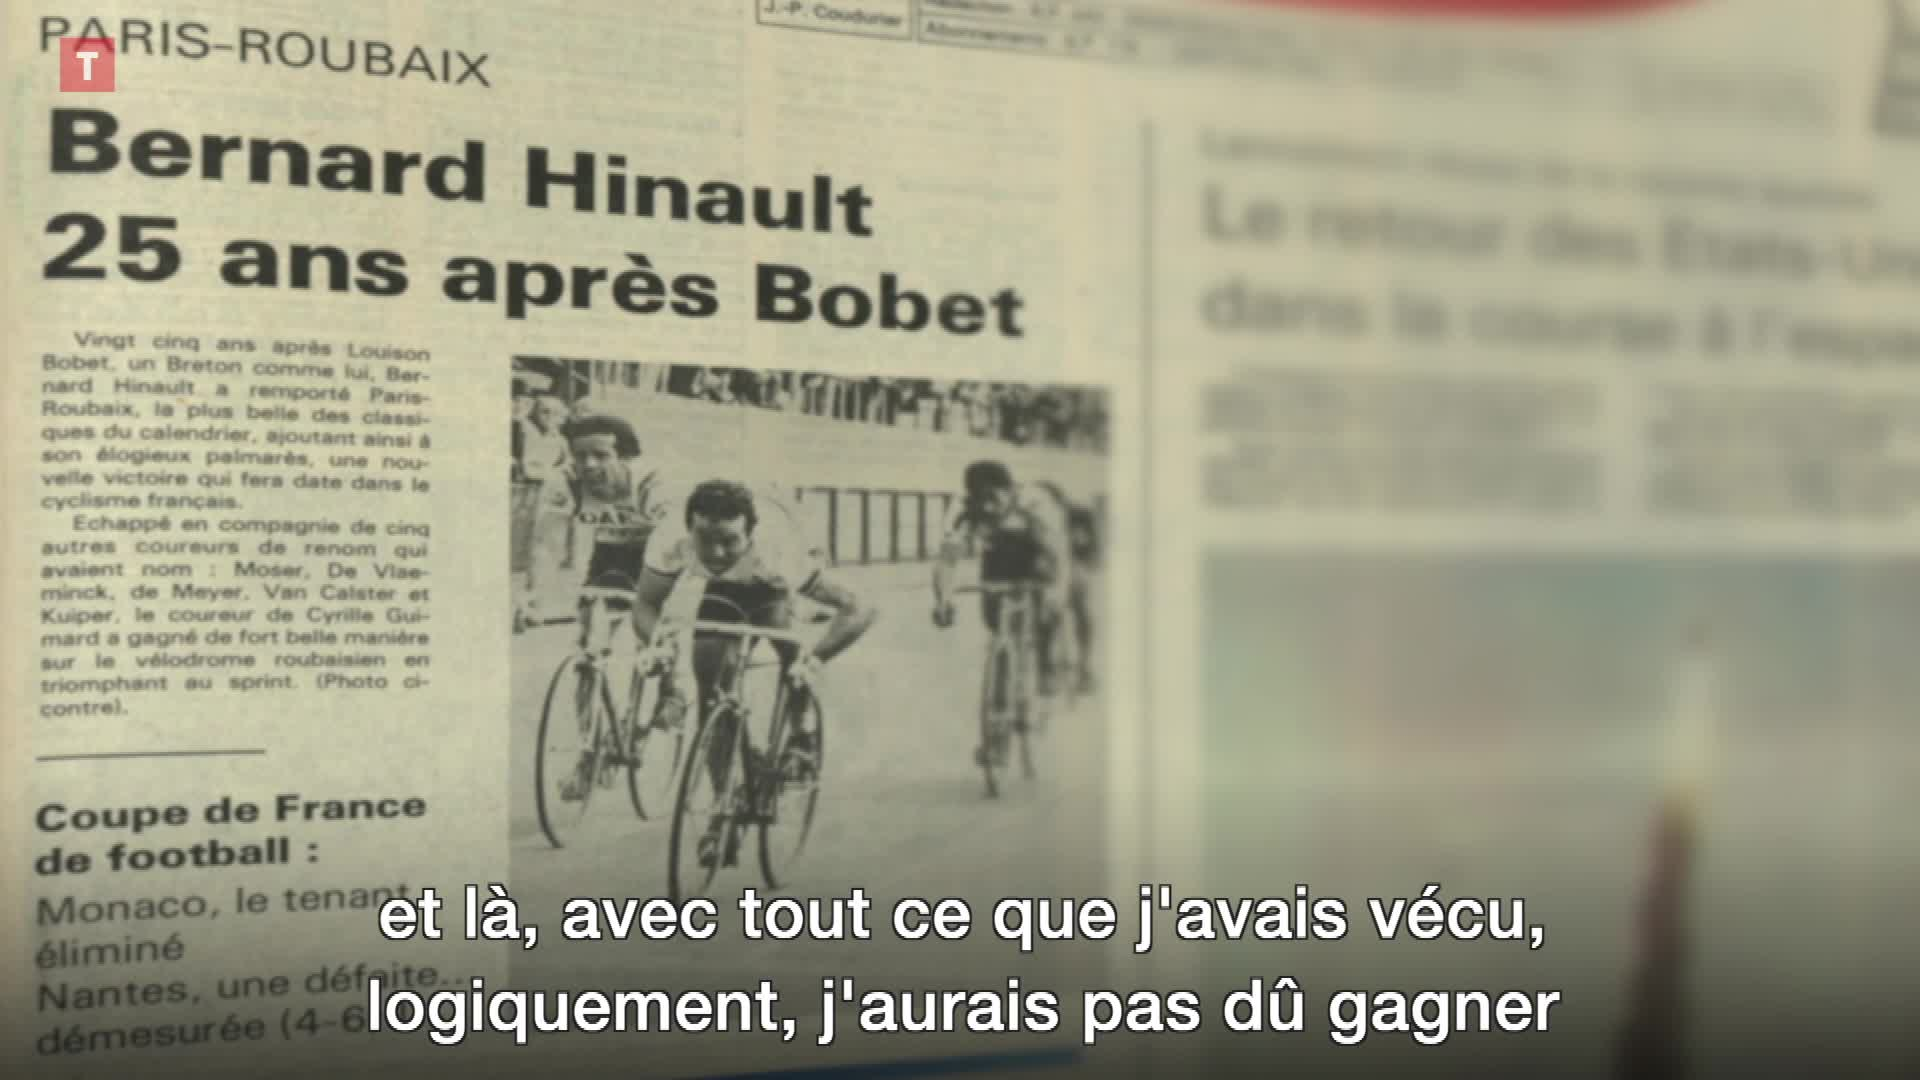 Paris-Roubaix 1981 : Bernard Hinault se souvient  (Le Télégramme)